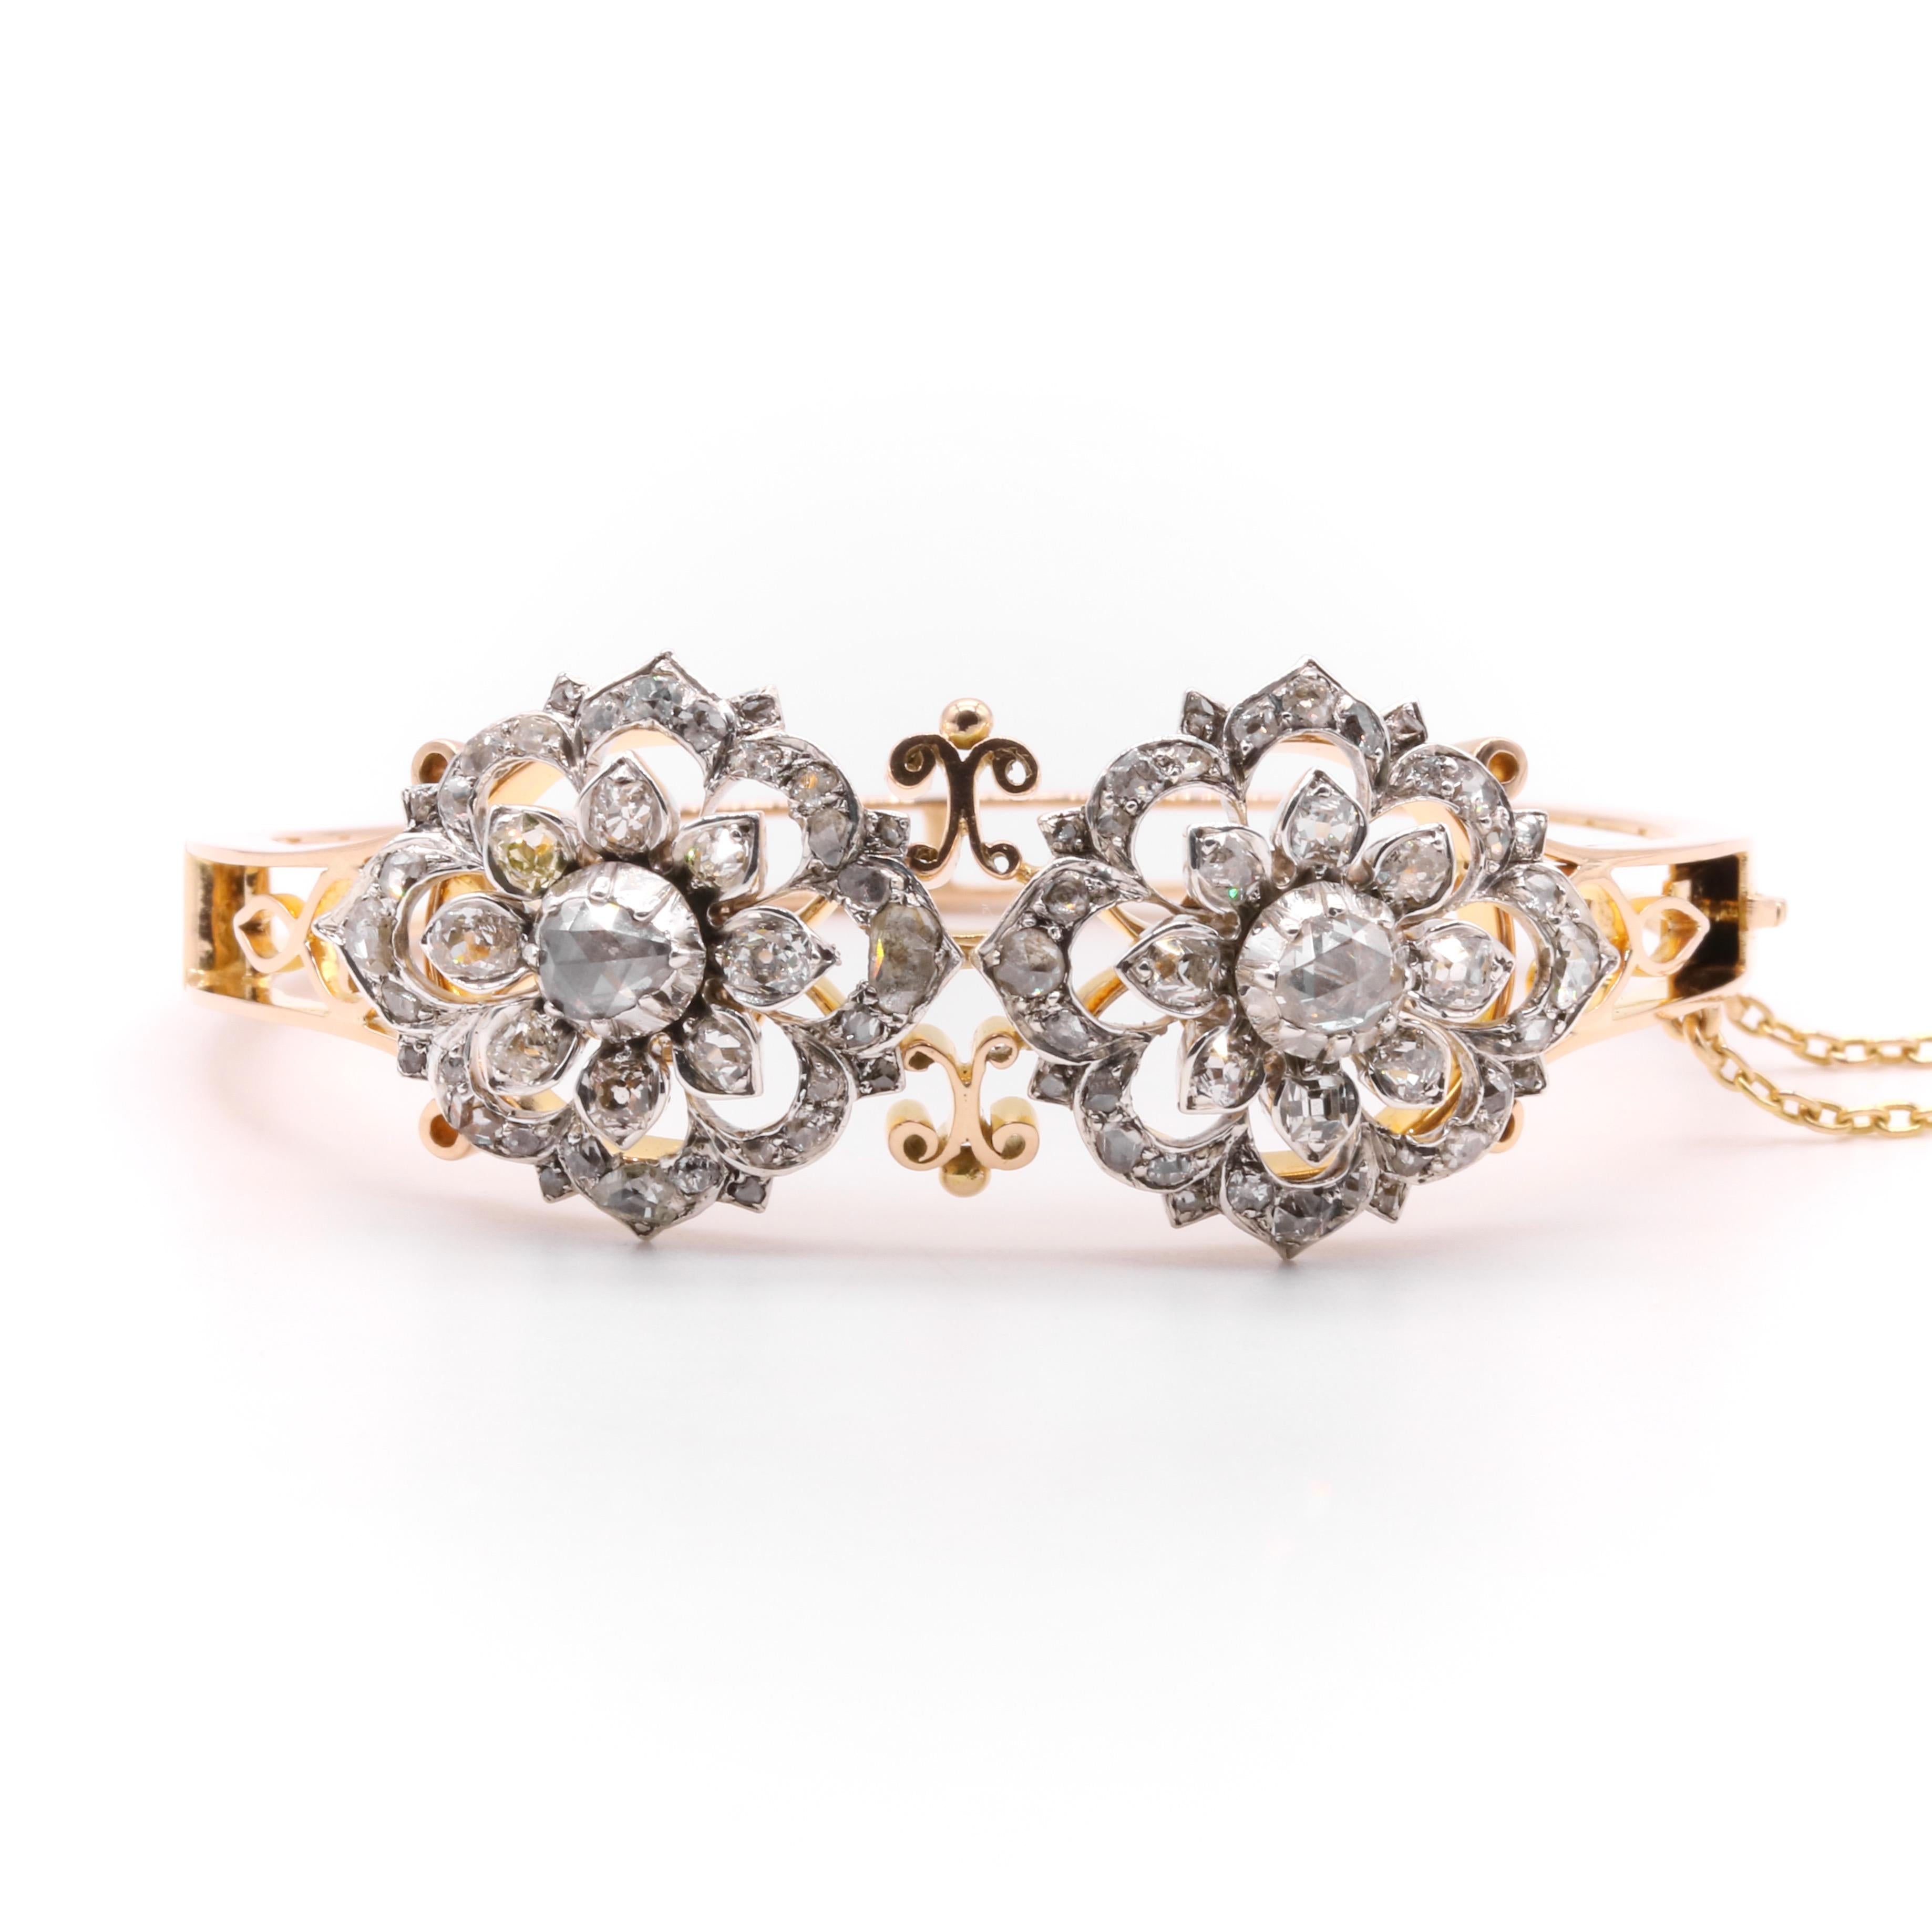 Un bracelet victorien en diamant, argent et or jaune, comprenant deux broches détachables comprenant chacune un gros diamant taillé en rose, et quarante diamants taillés à l'ancienne et taillés en rose, sertis en argent, avec un bracelet en or jaune